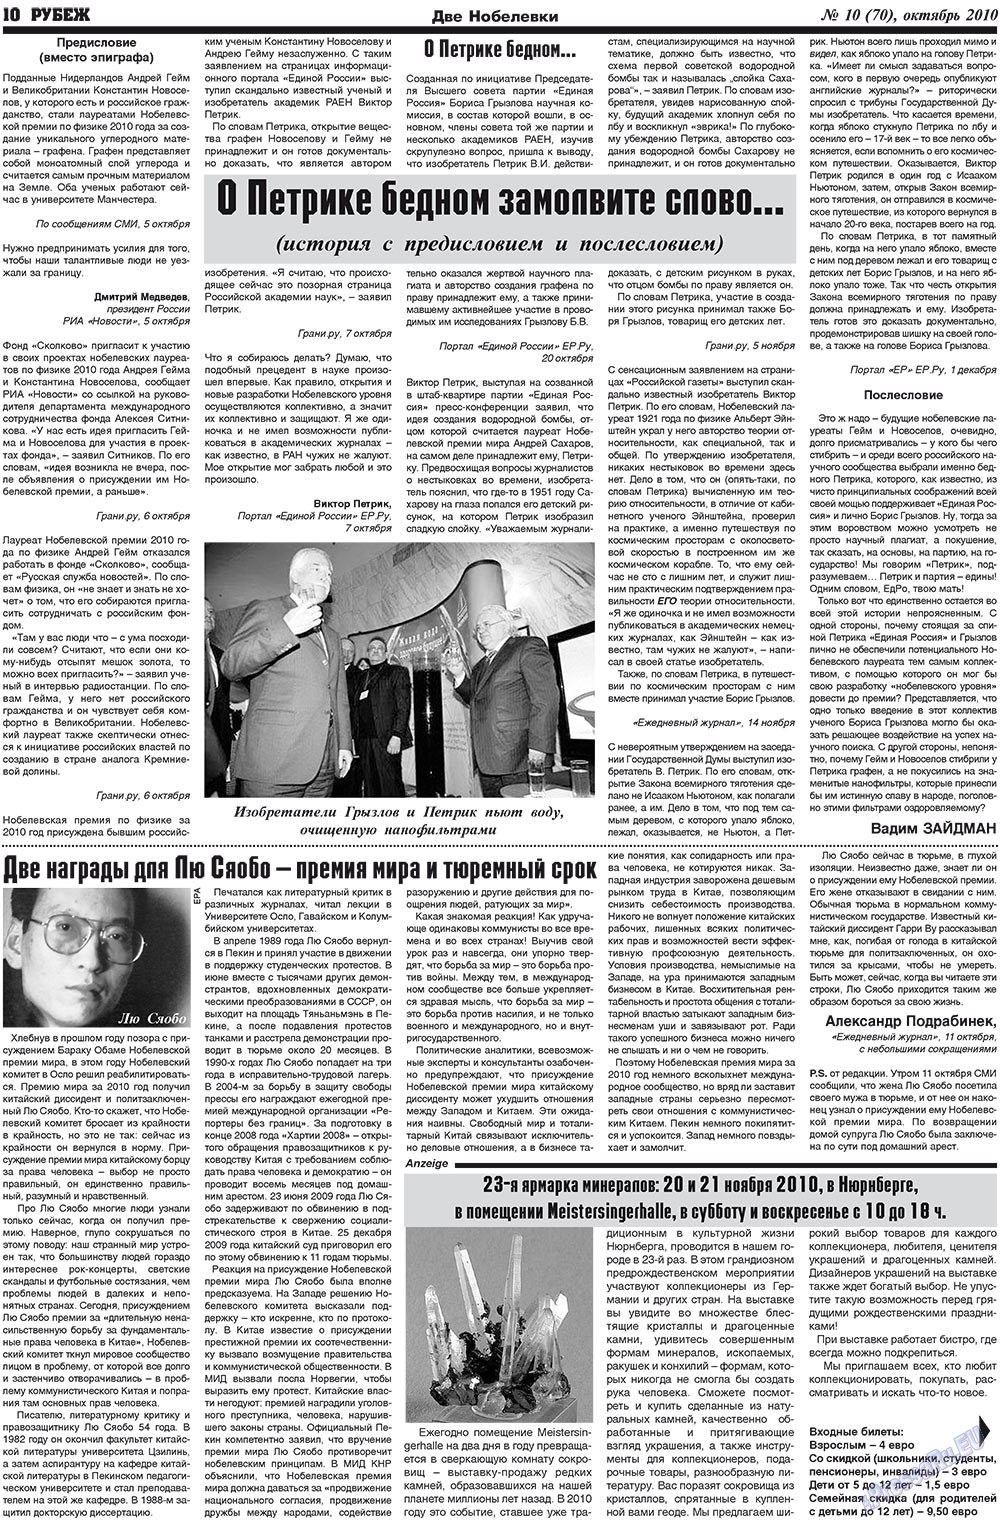 Рубеж (газета). 2010 год, номер 10, стр. 10